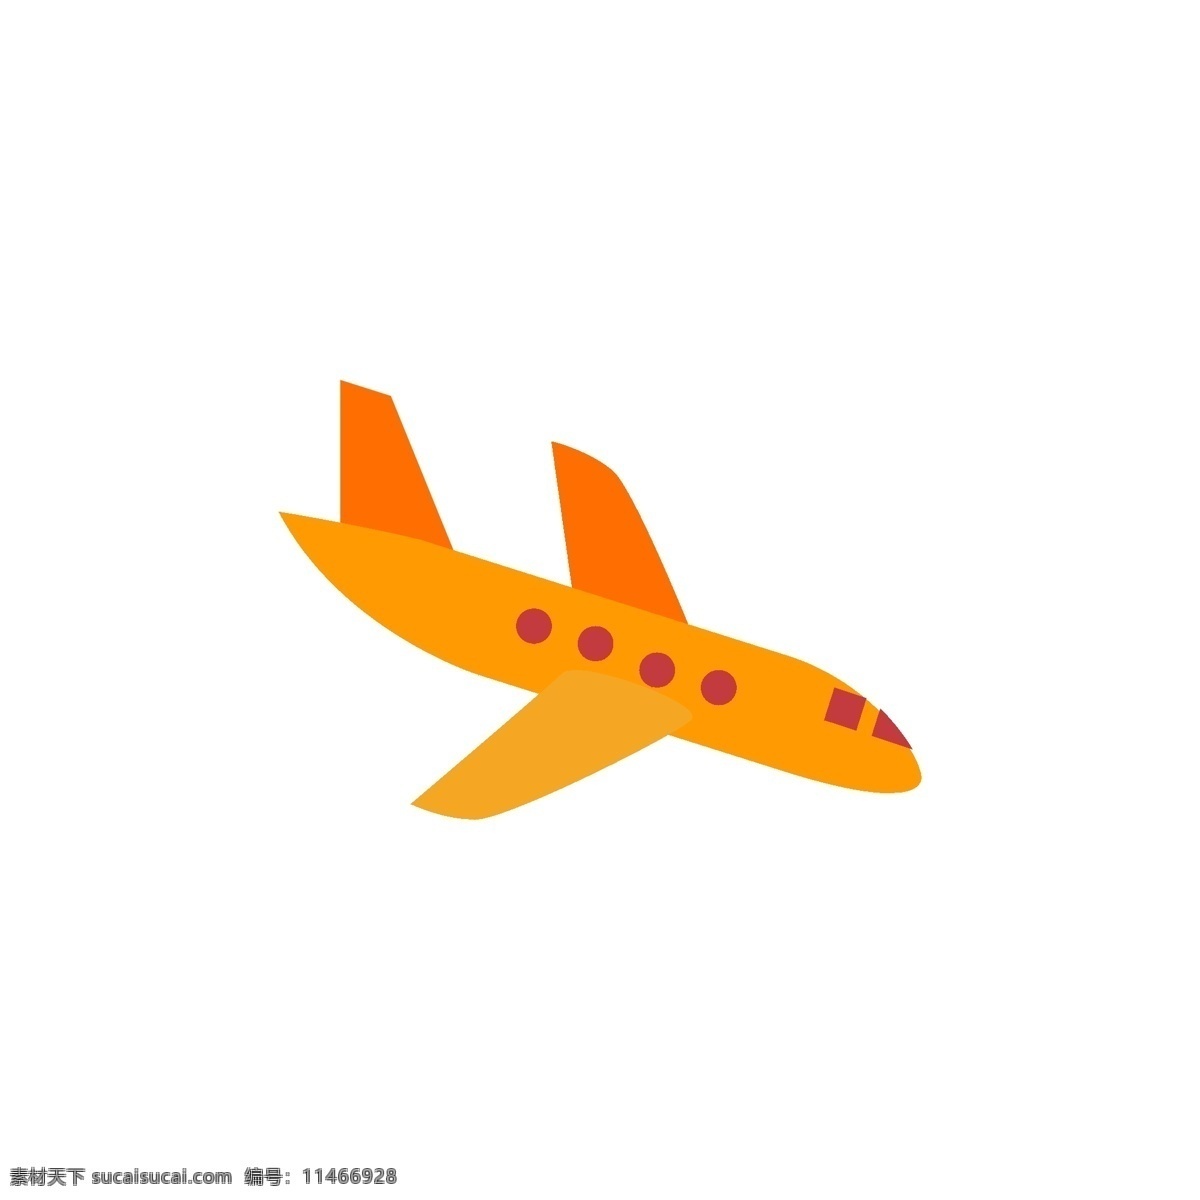 橙色 飞机 免 抠 图 天上的飞机 ui应用图标 电脑图标 卡通图案 卡通插画 运输图标 交通工具 免抠图